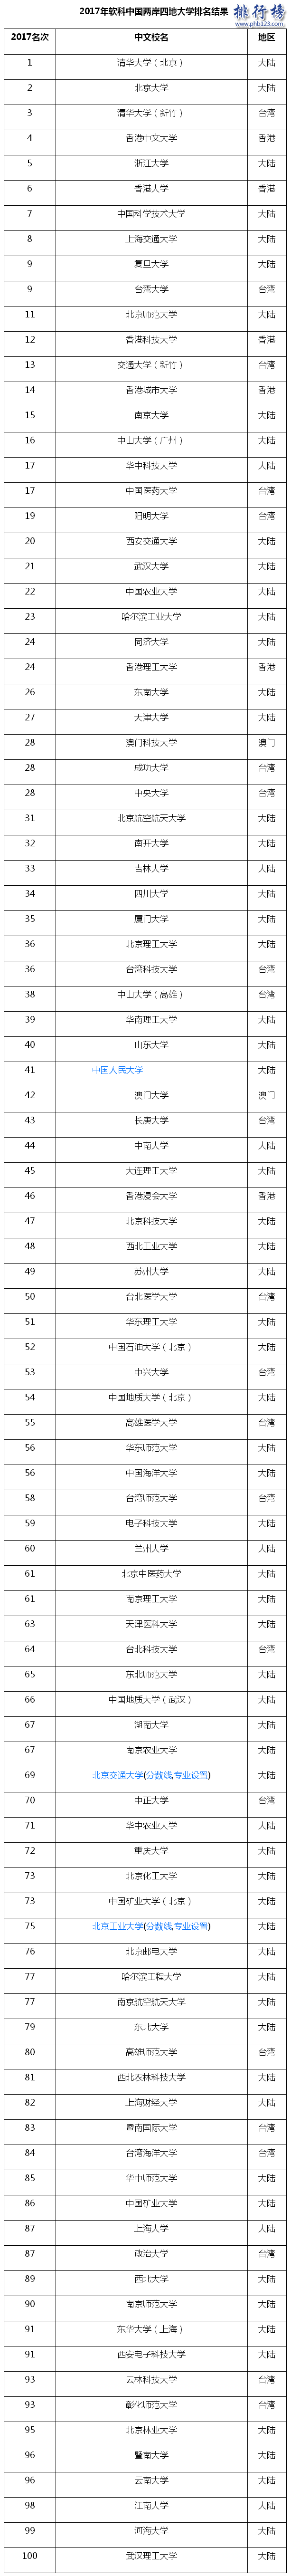 2017年中国两岸四地大学百强排名:清北前二,台湾清华第三